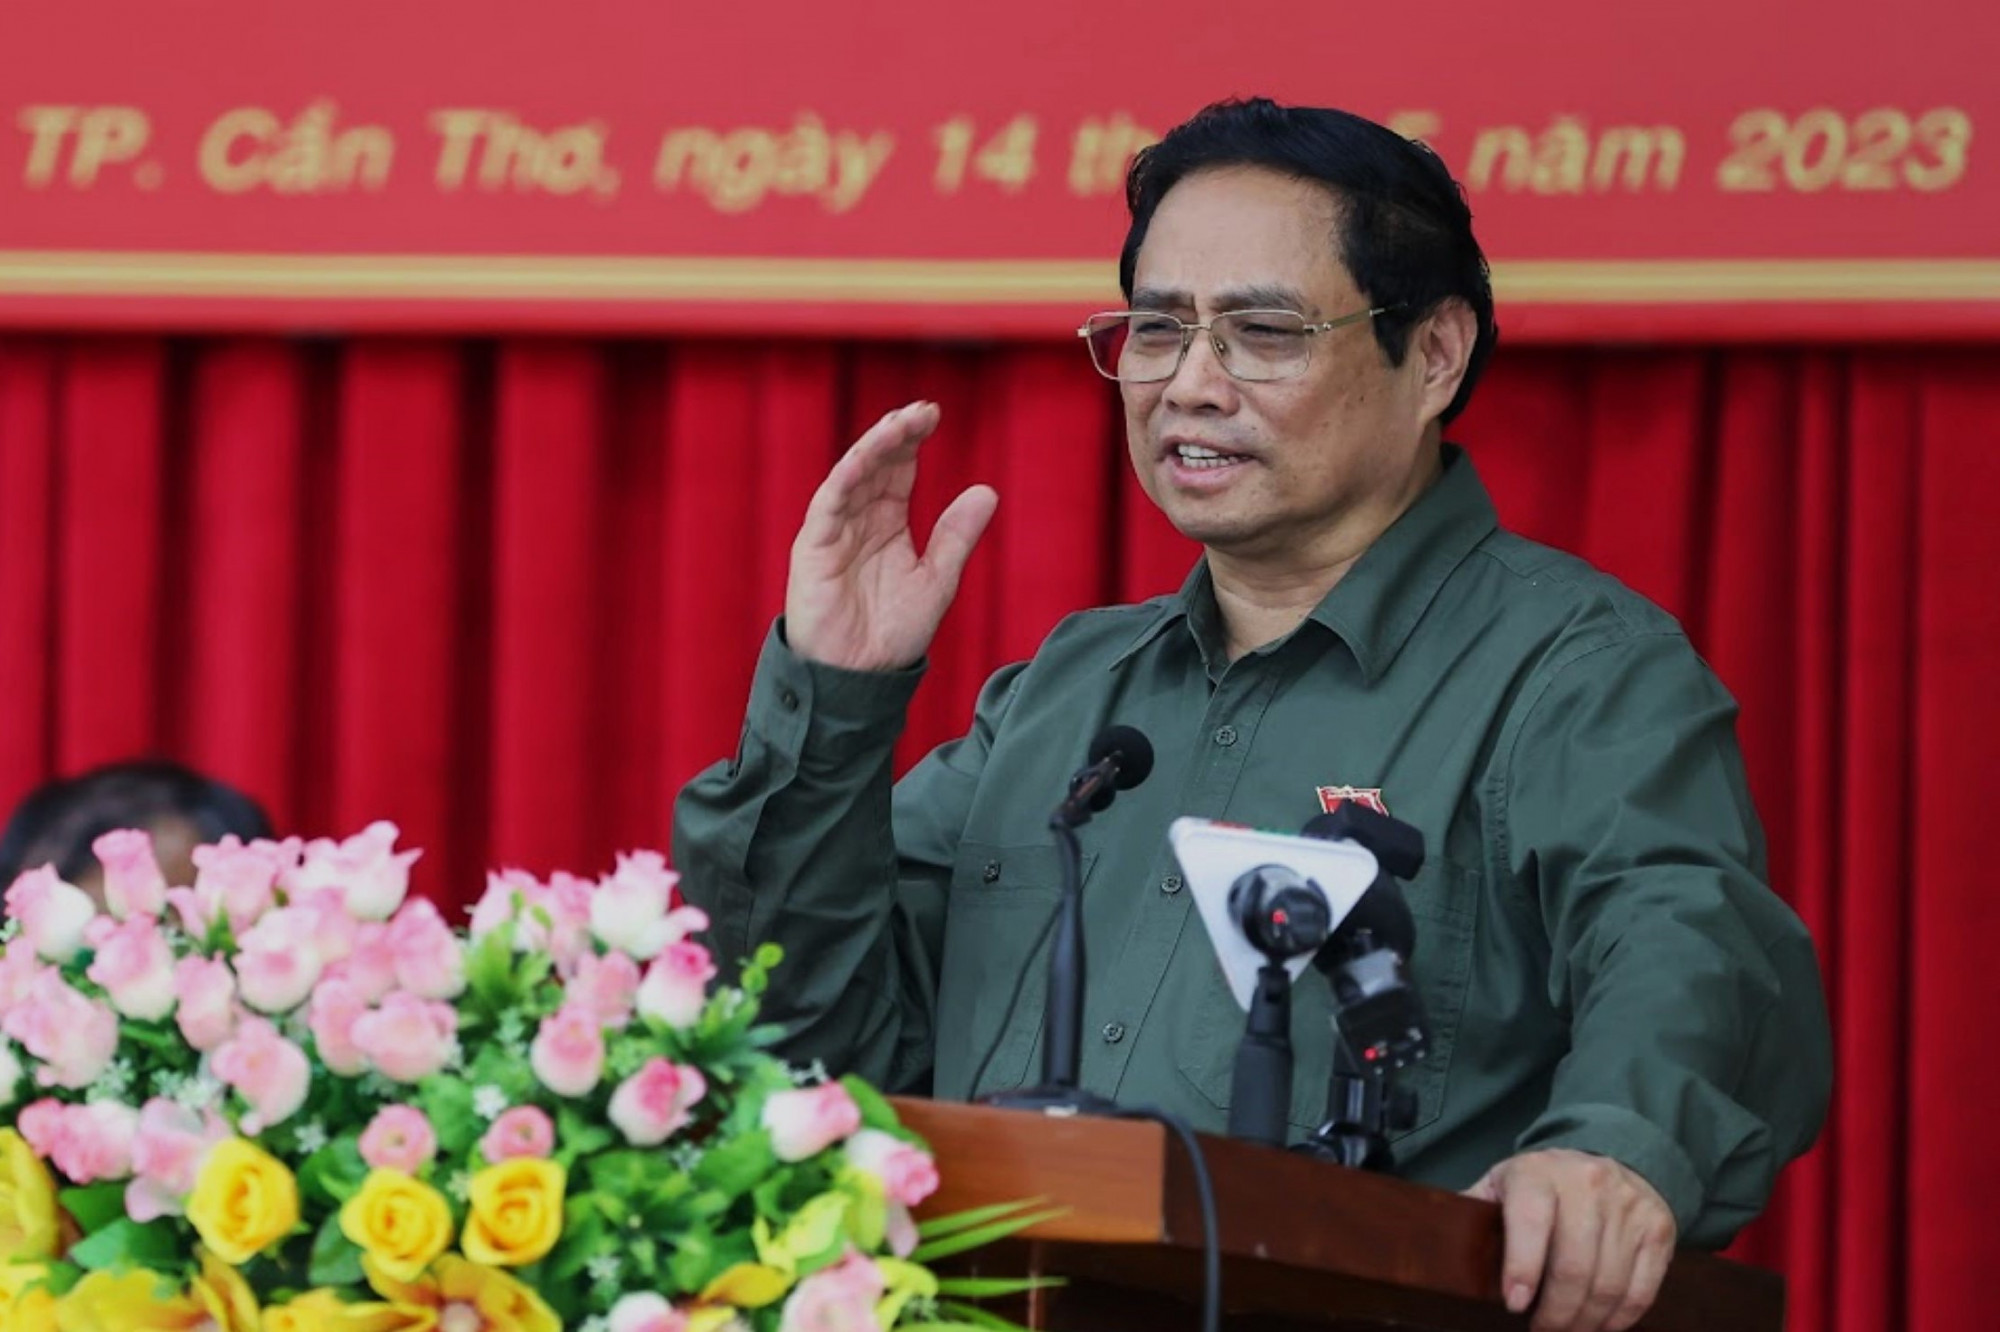 Thủ tướng Chính phủ Phạm Minh Chính phát biểu tại buổi tiếp xúc cử tri ngày 14/5 tại TP. Cần Thơ - Ảnh: chinhphu.vn